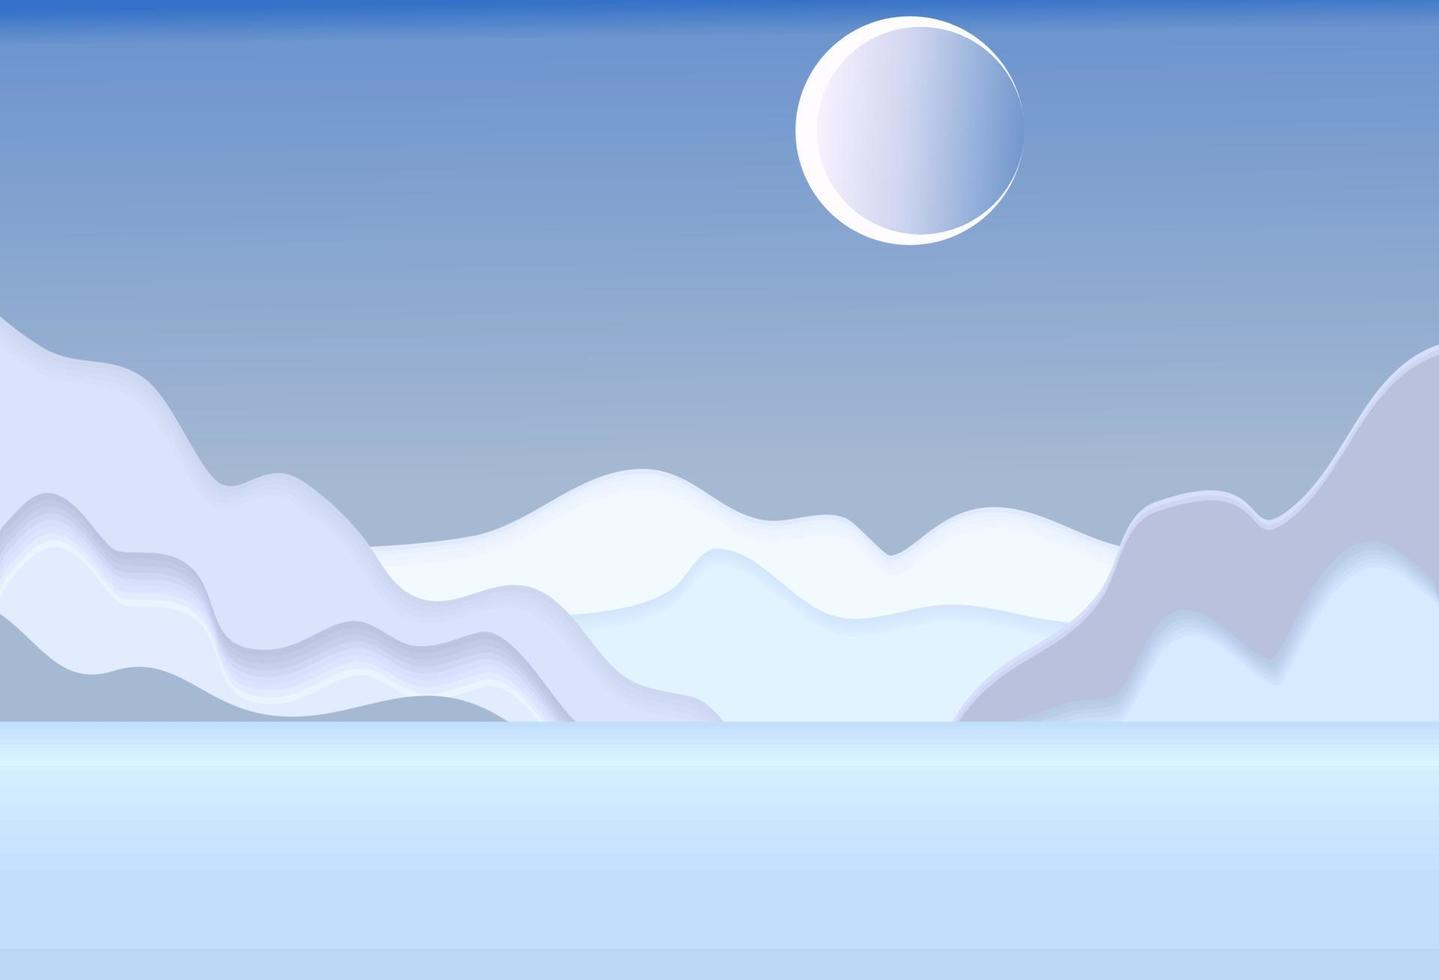 paisaje de campo de papel paisaje de verano con colinas verdes y cielo azul capas de nubes blancas corte de papel vector creativo 3d naturaleza ecología imagen gráfica del mundo, mar azul y luna azul en el cielo.